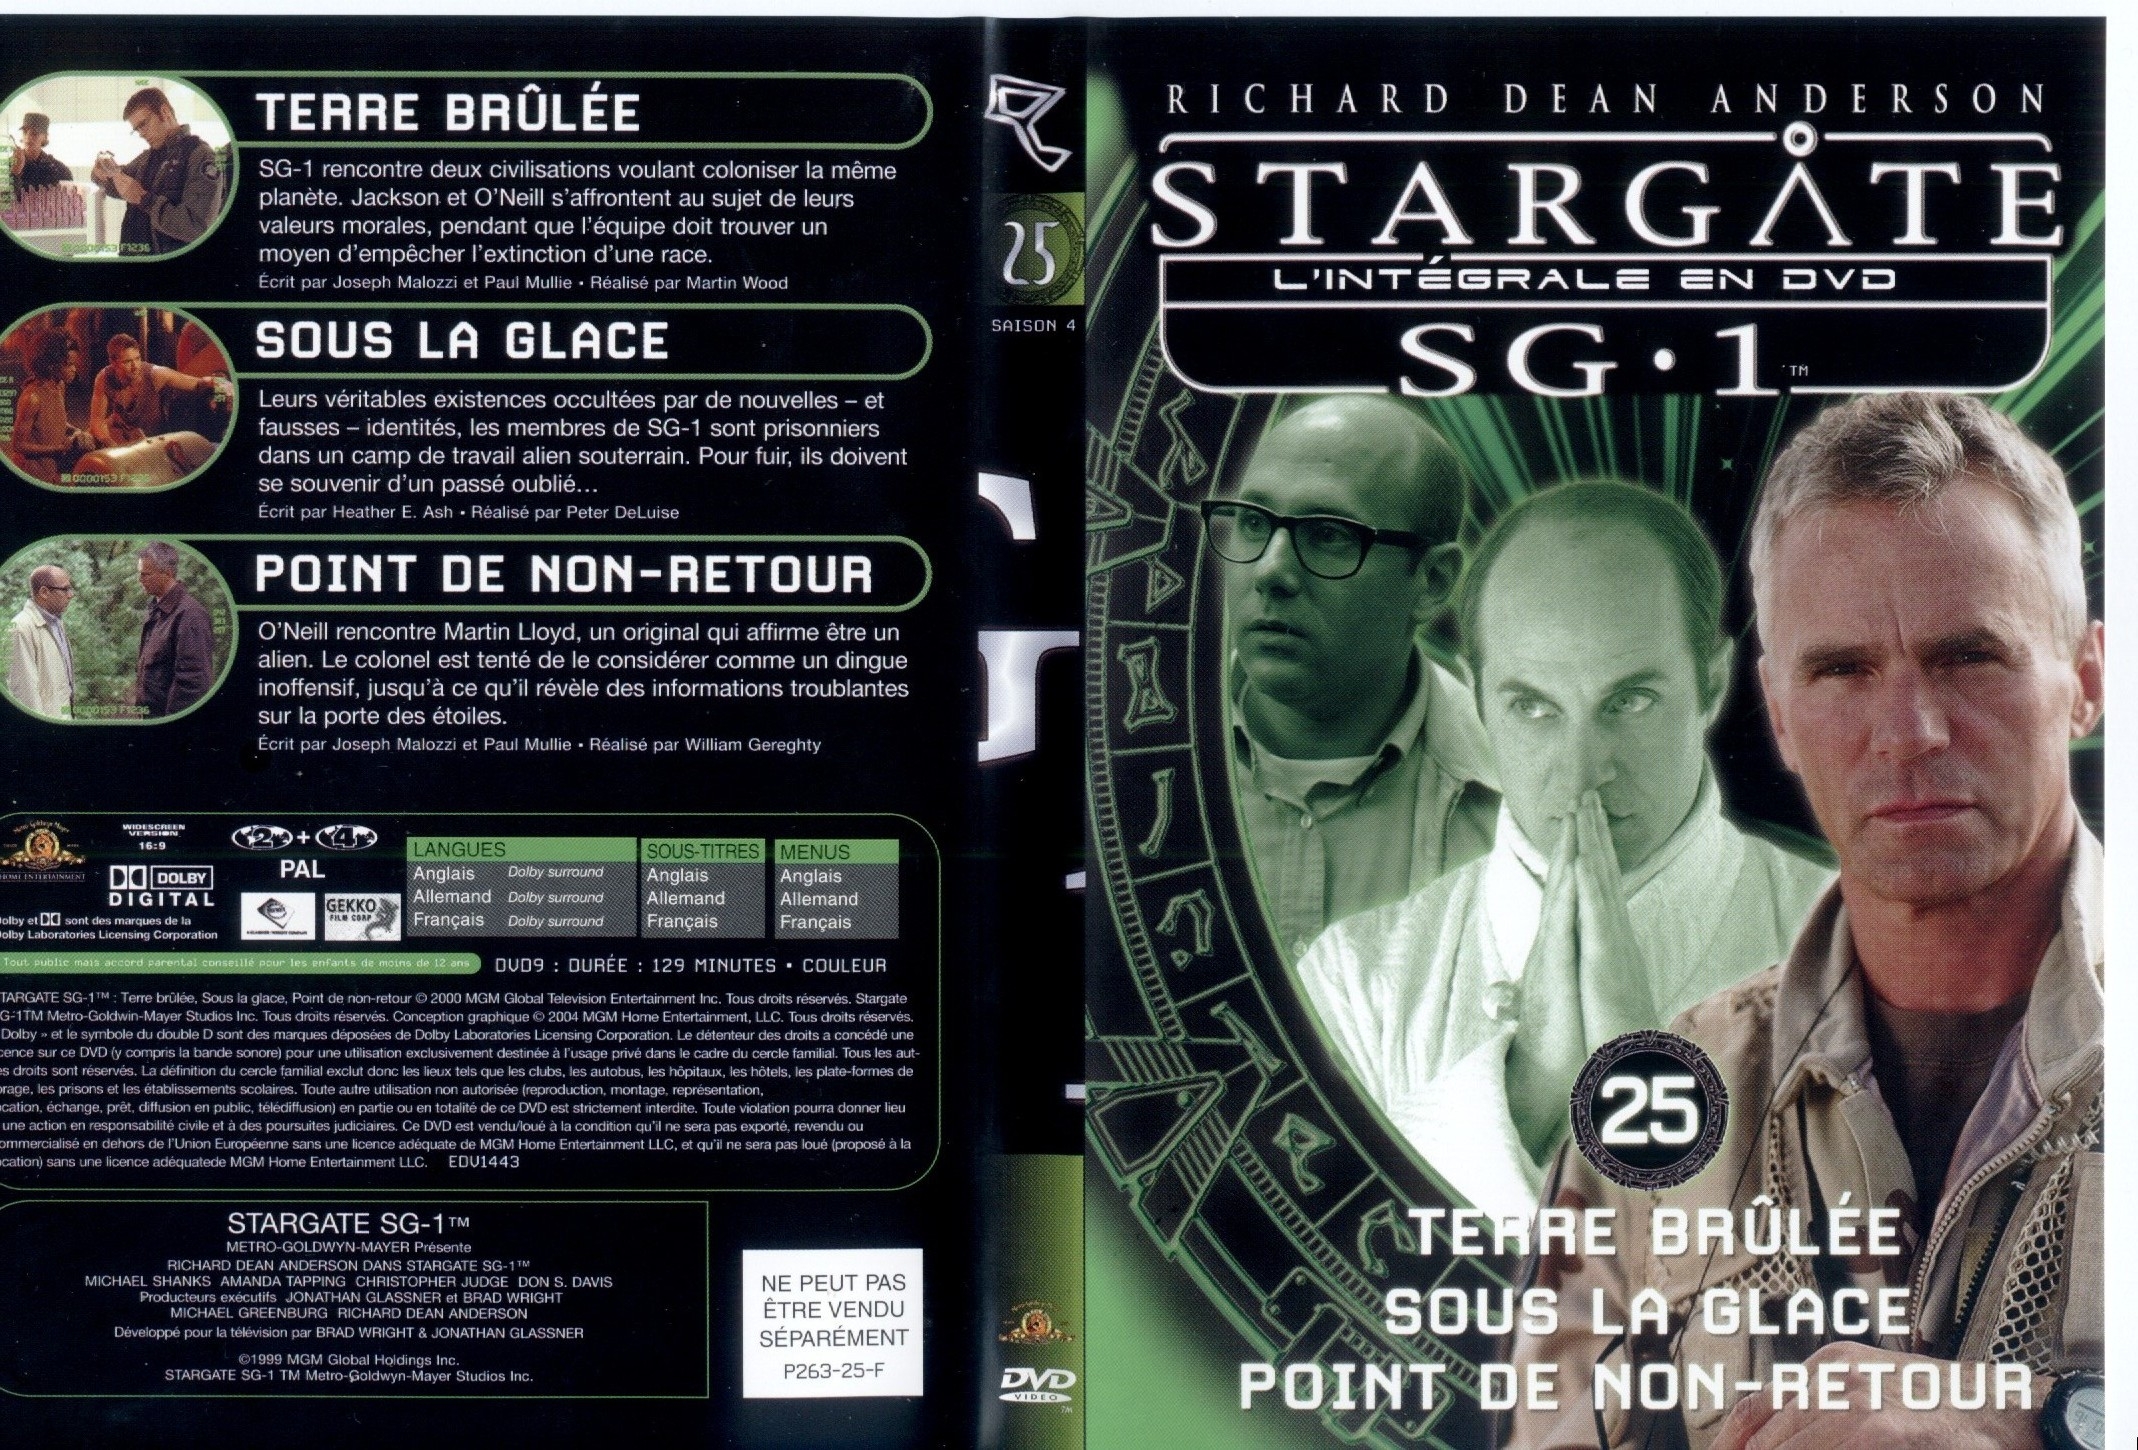 Jaquette DVD Stargate saison 4 vol 25